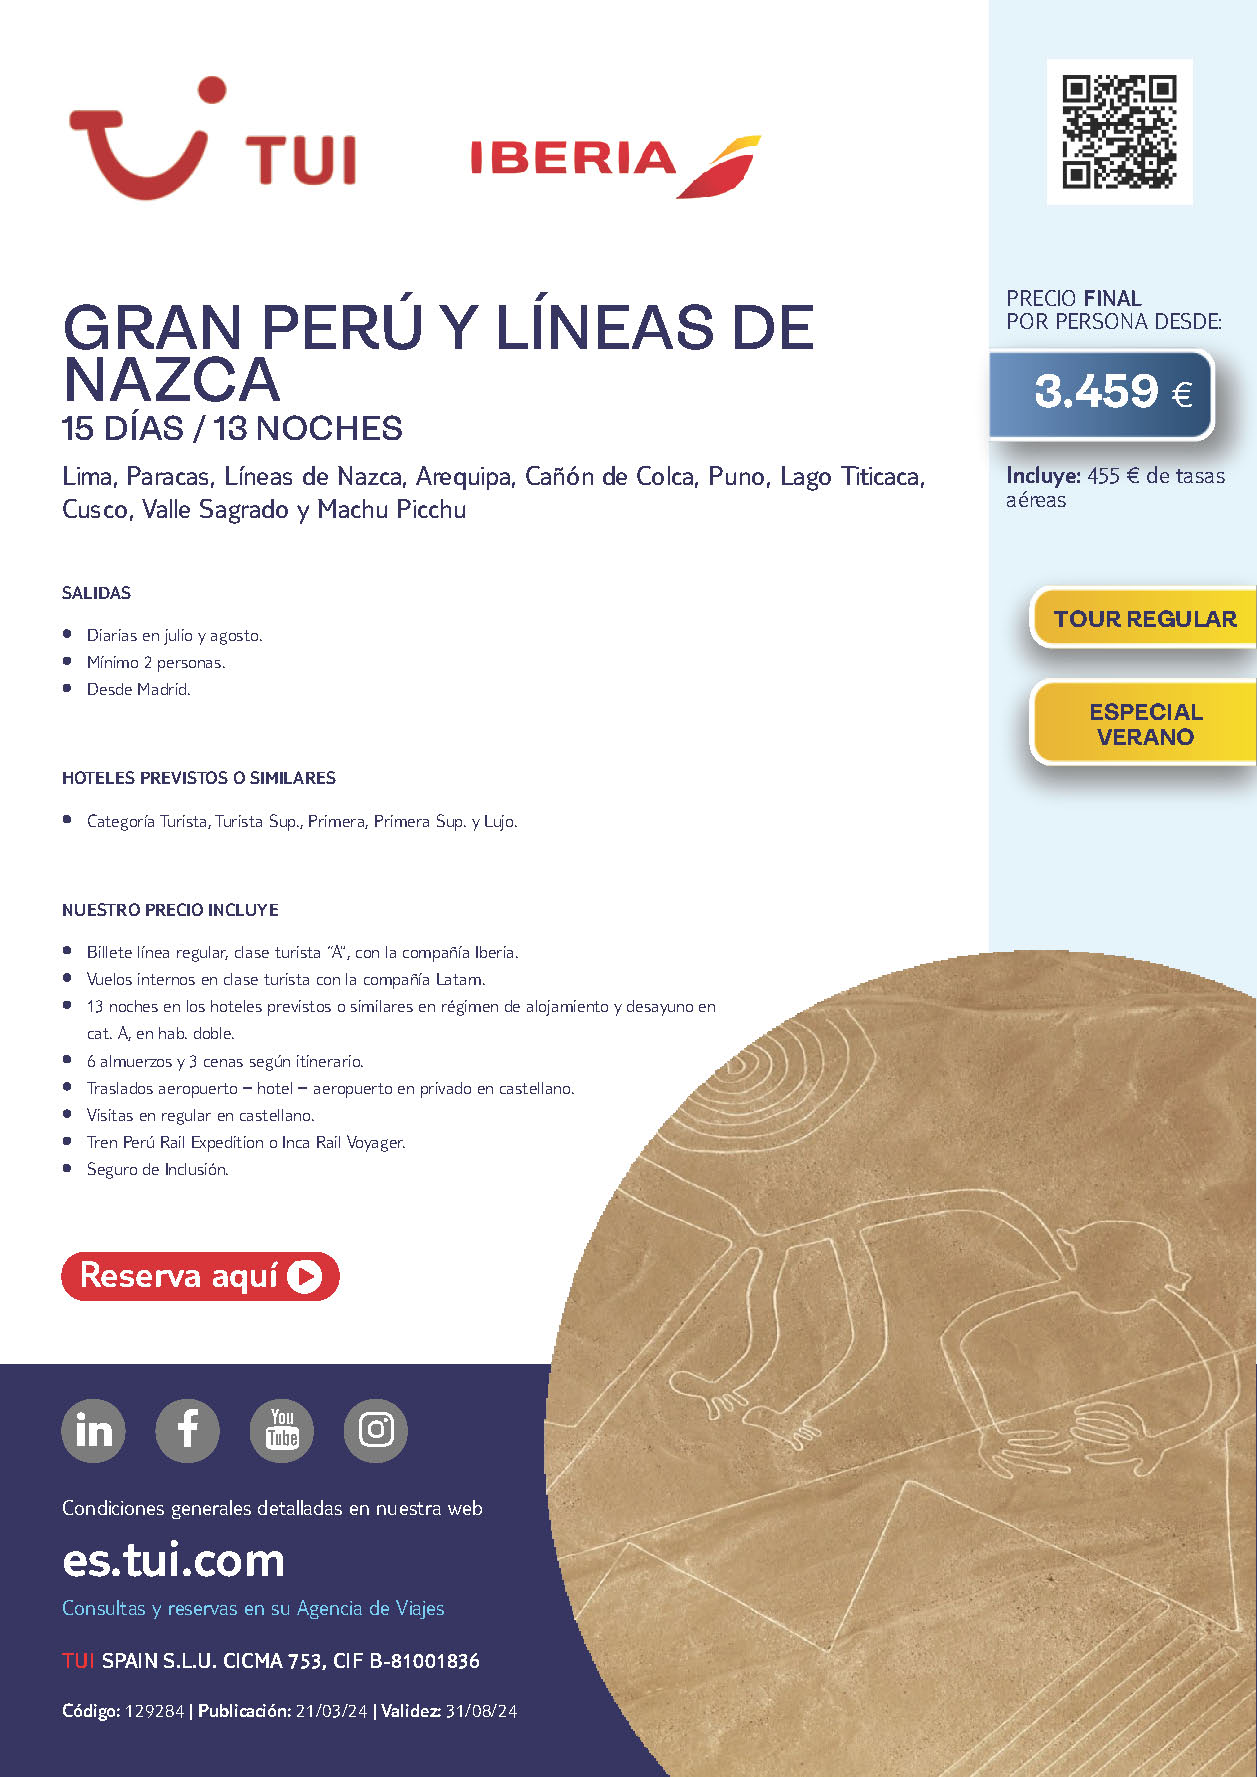 Oferta TUI circuito Peru Gran Peru y Lineas de Nazca 15 dias salidas Julio y Agosto desde Madrid vuelos Iberia